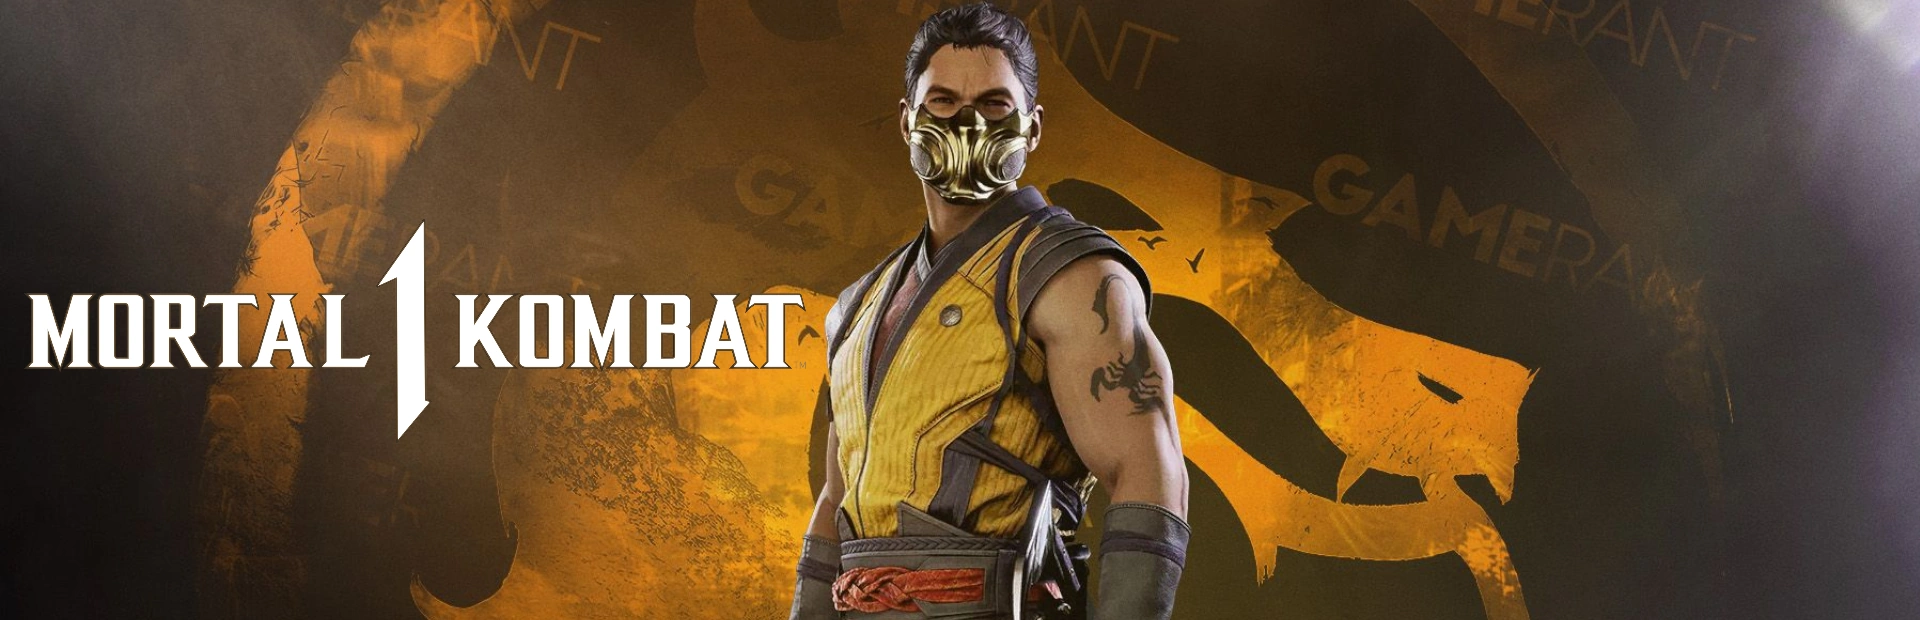 دانلود بازی Mortal Kombat 1 برای کامپیوتر | گیمباتو